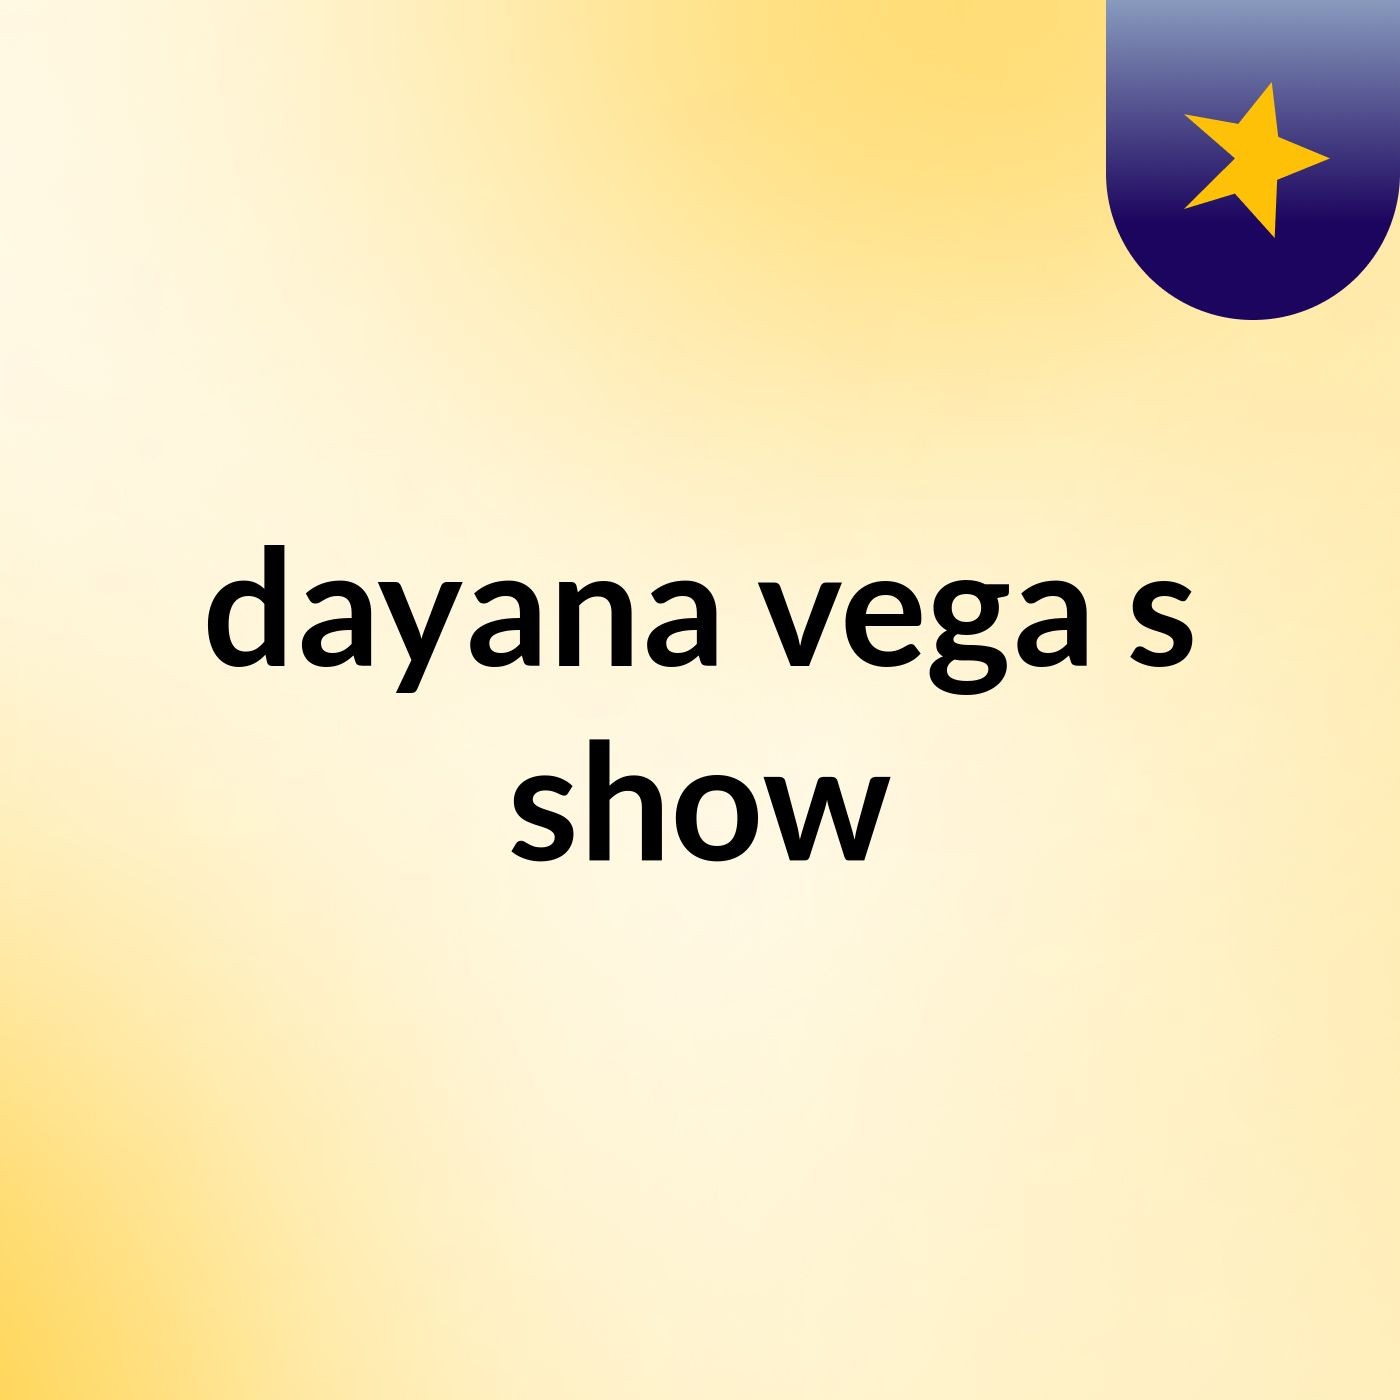 dayana vega's show